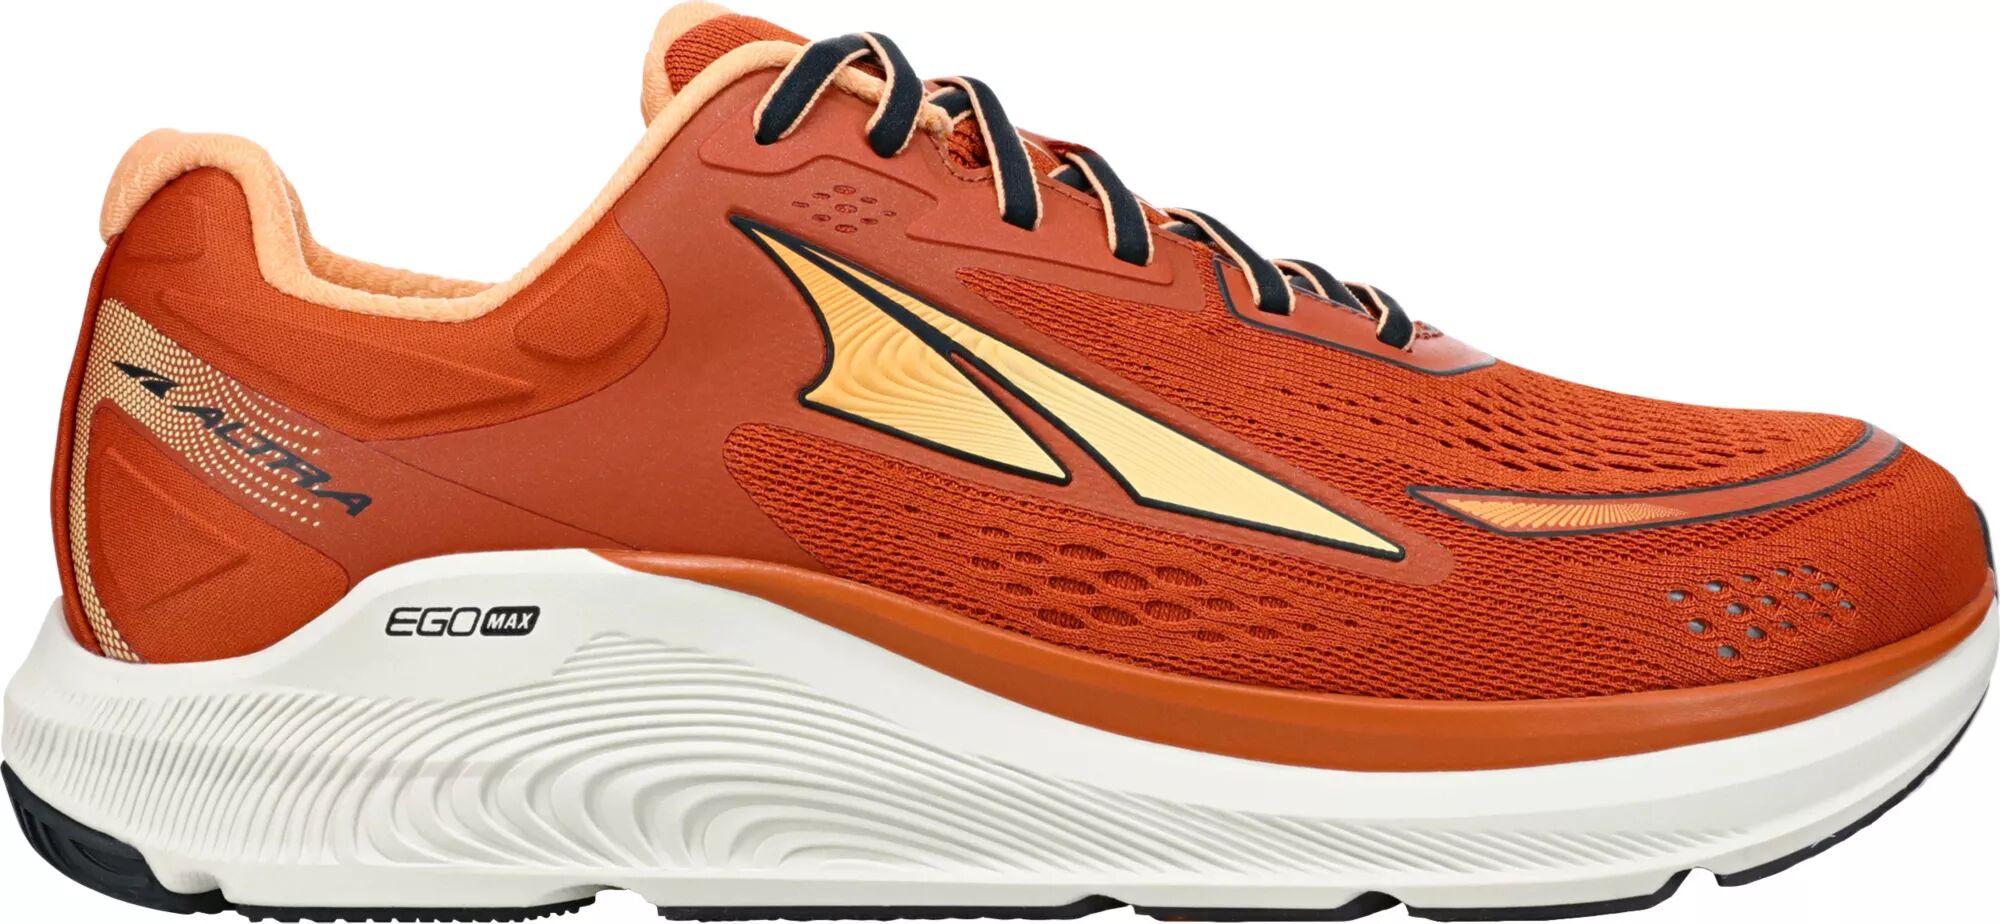 Altra Men's Paradigm 6 Running Shoes, Size 11, Orange